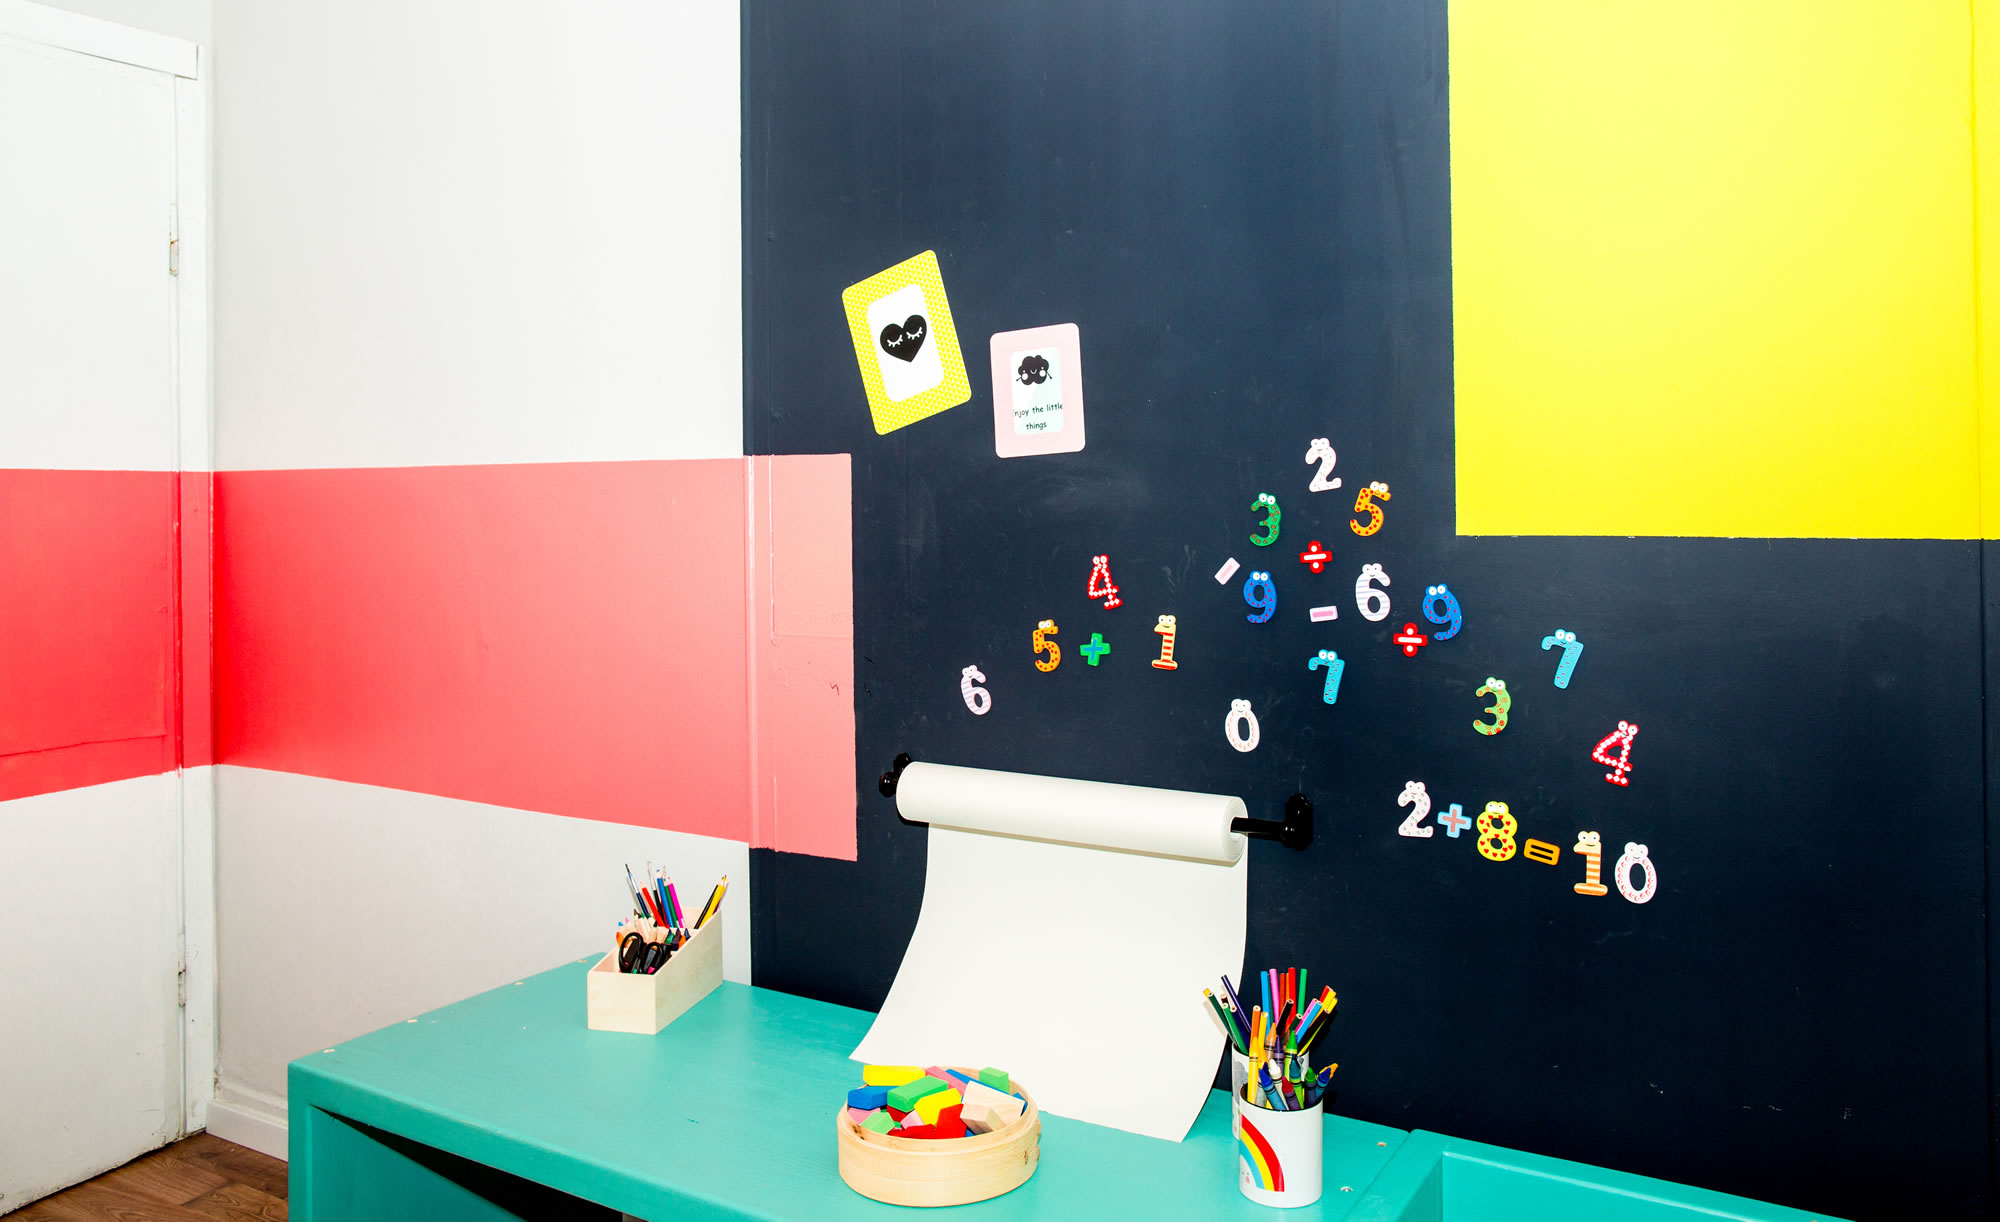 צבעי הקיר מגדירים את אזור המשחק והלימוד בחדר המשחקים.